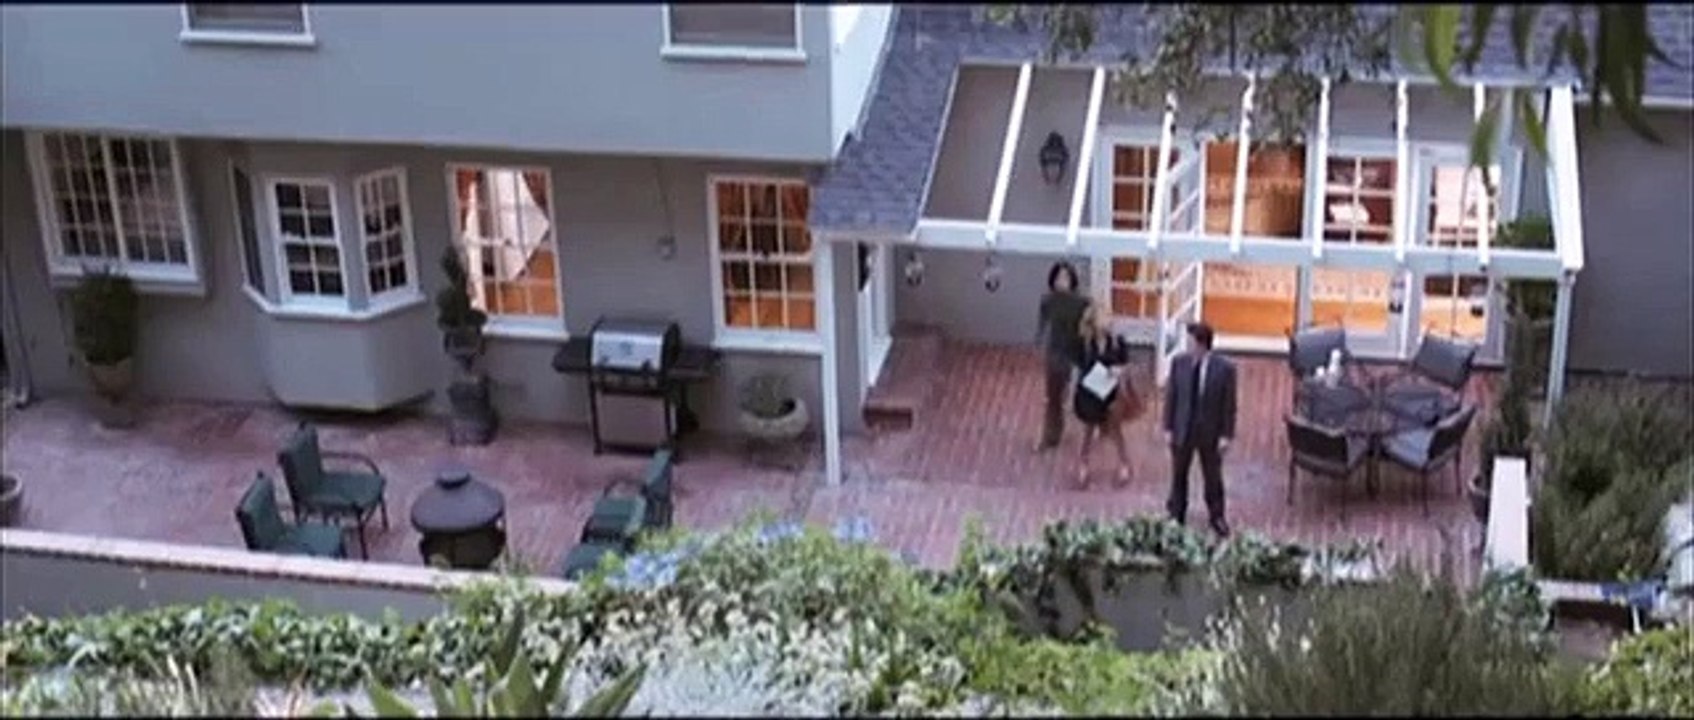 Open House - Willkommen in der Nachbarschaft | movie | 2010 | Official Trailer